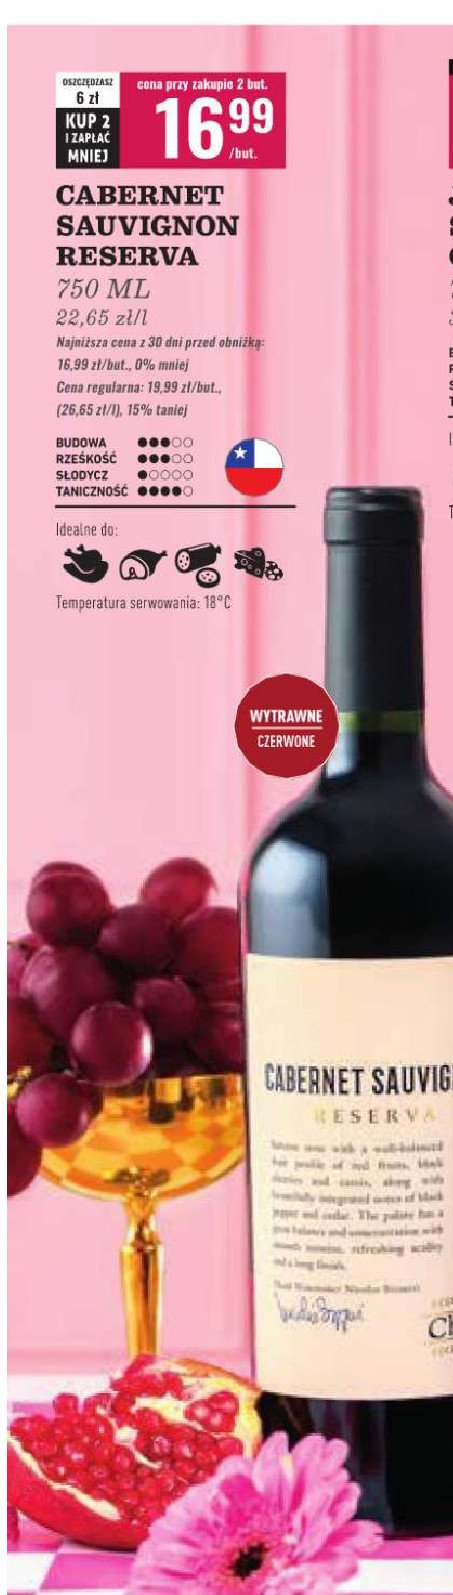 Wino Cabernet sauvignon reserva promocja